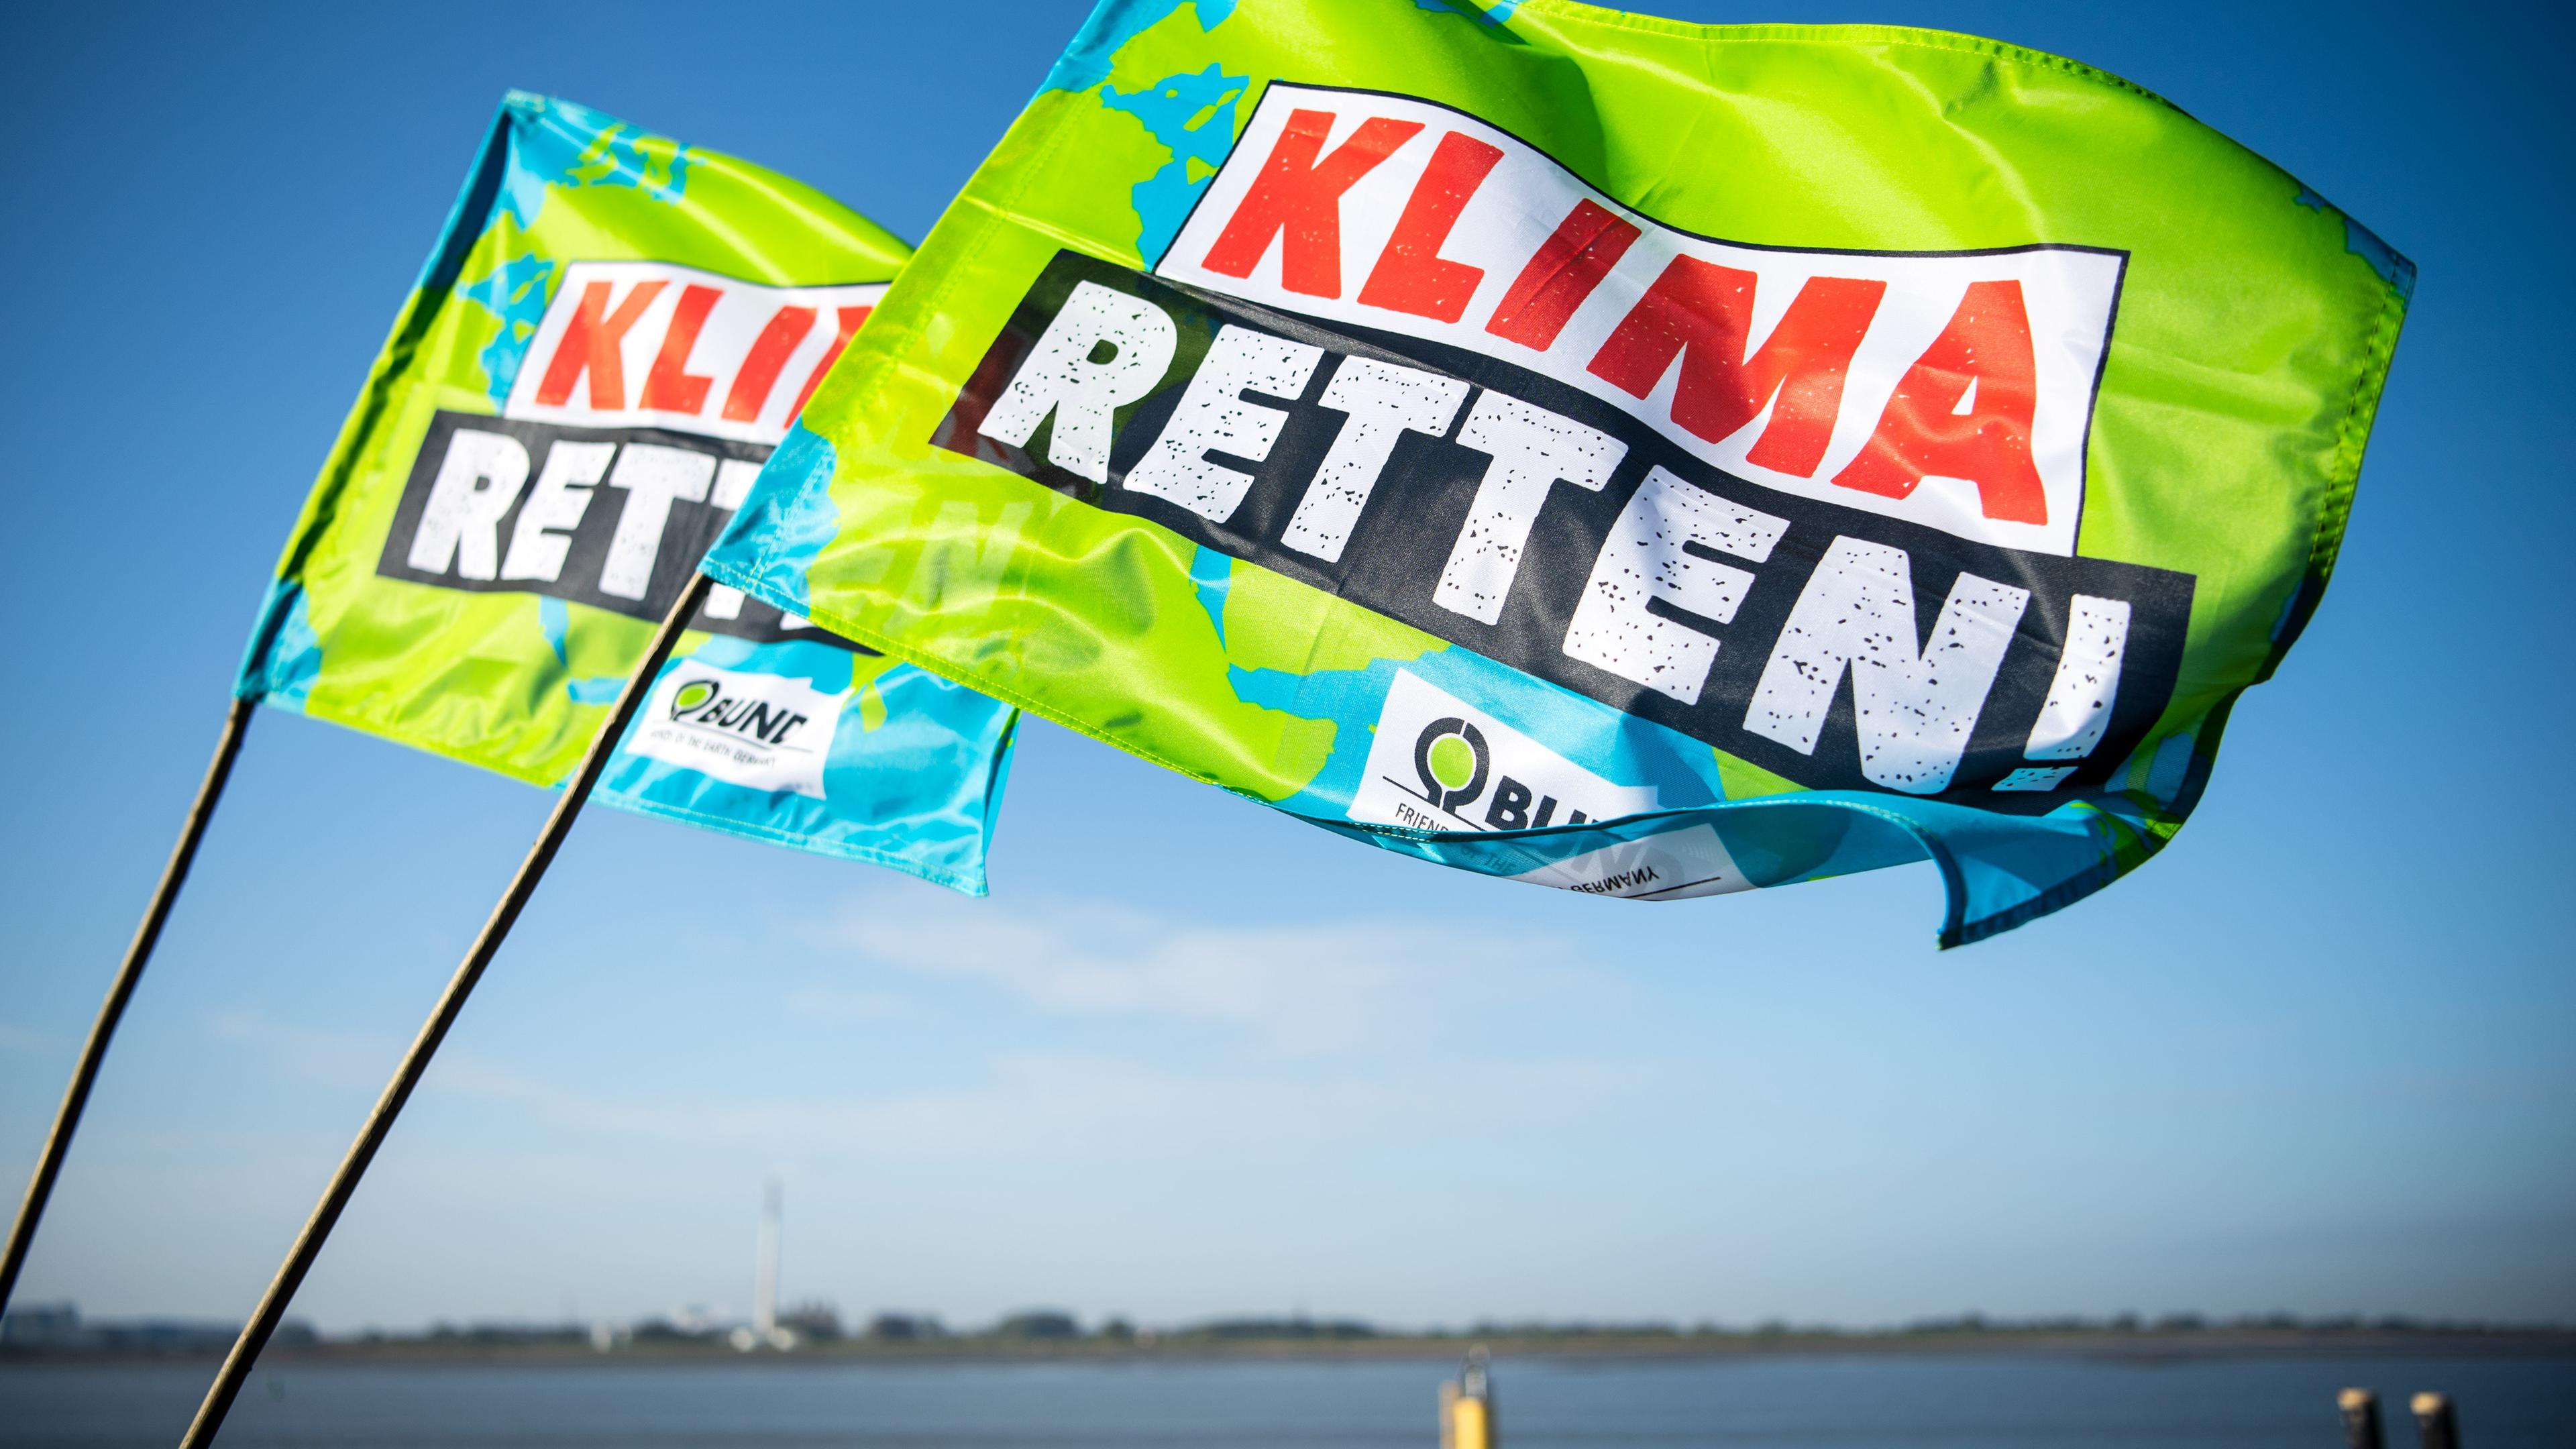 Flaggen der Organisation BUND mit der Aufschrift "Klima Retten"